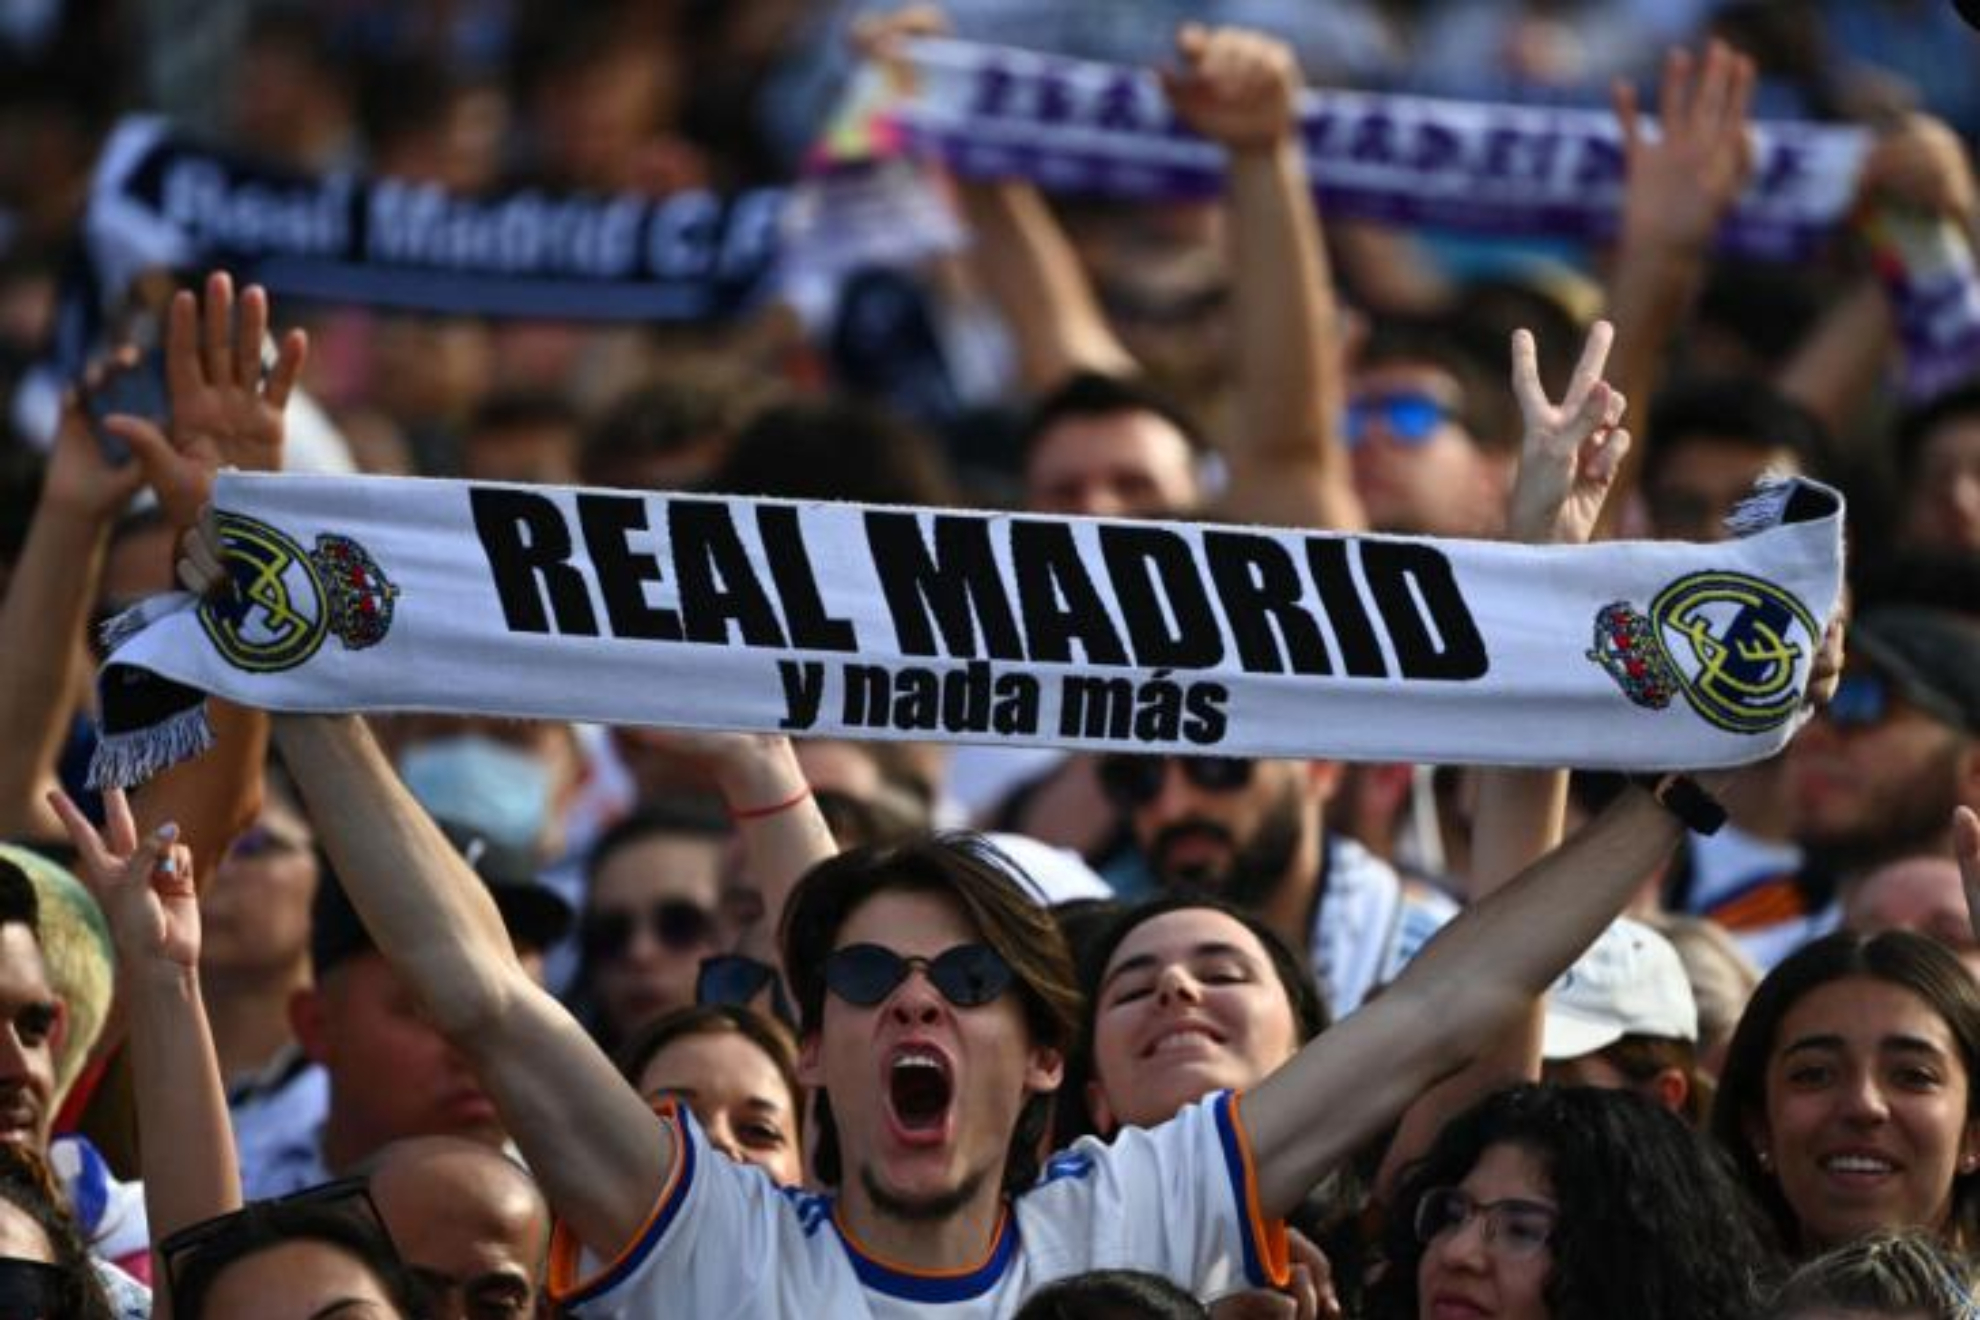 Los infinitos guios de Haaland al Real Madrid